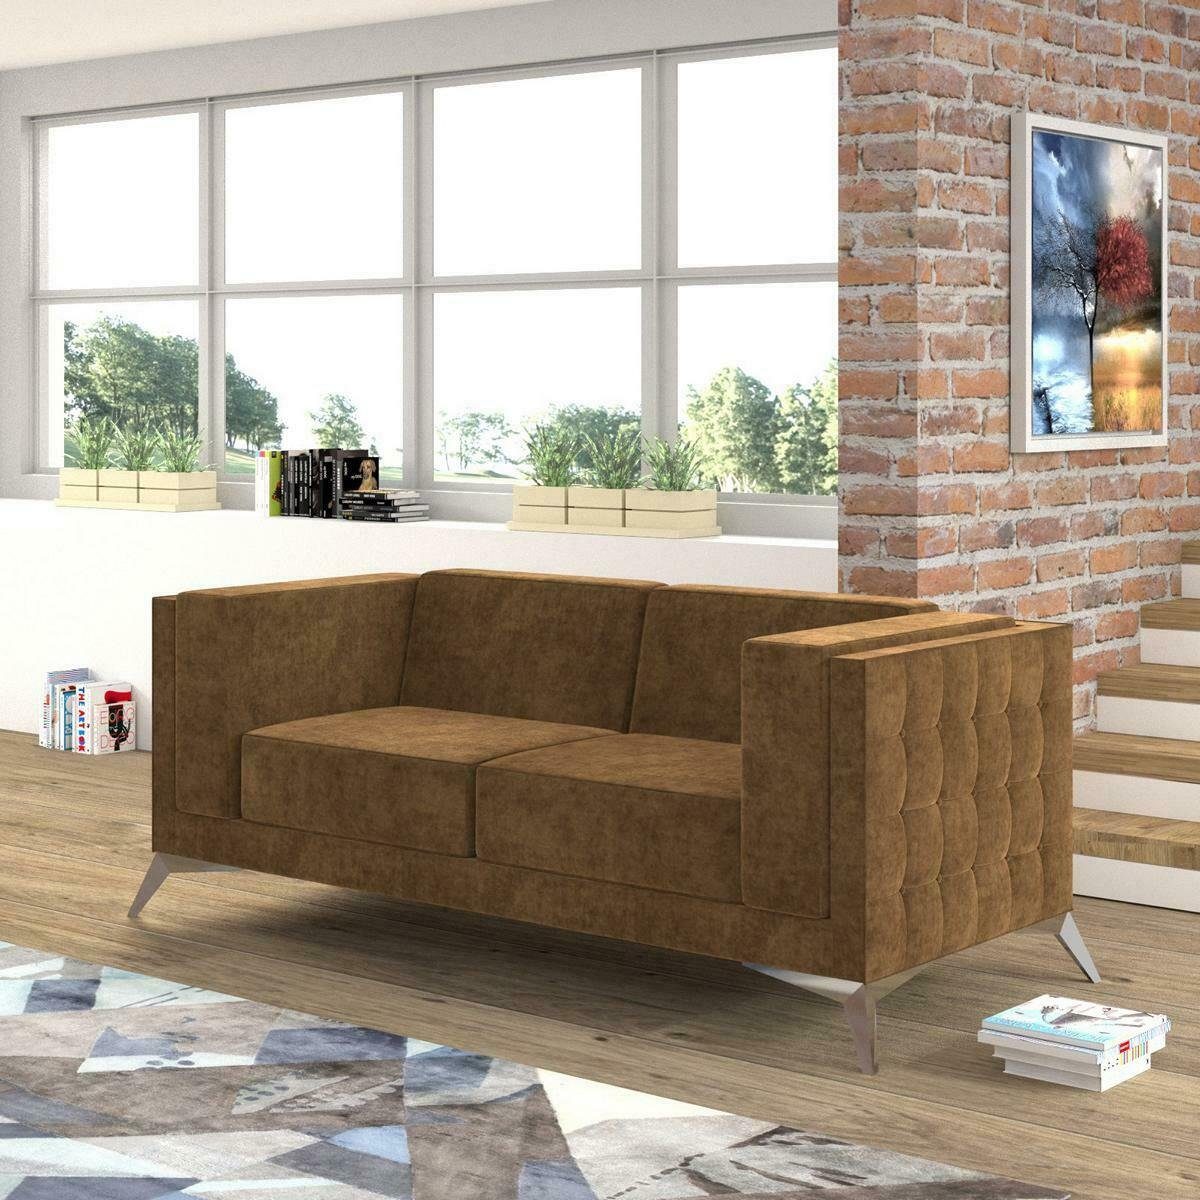 JVmoebel Sofa Chesterfield Polster Couch Garnitur Stoff Zweisitzer, Couchen Europe Sitz in Made Sofa